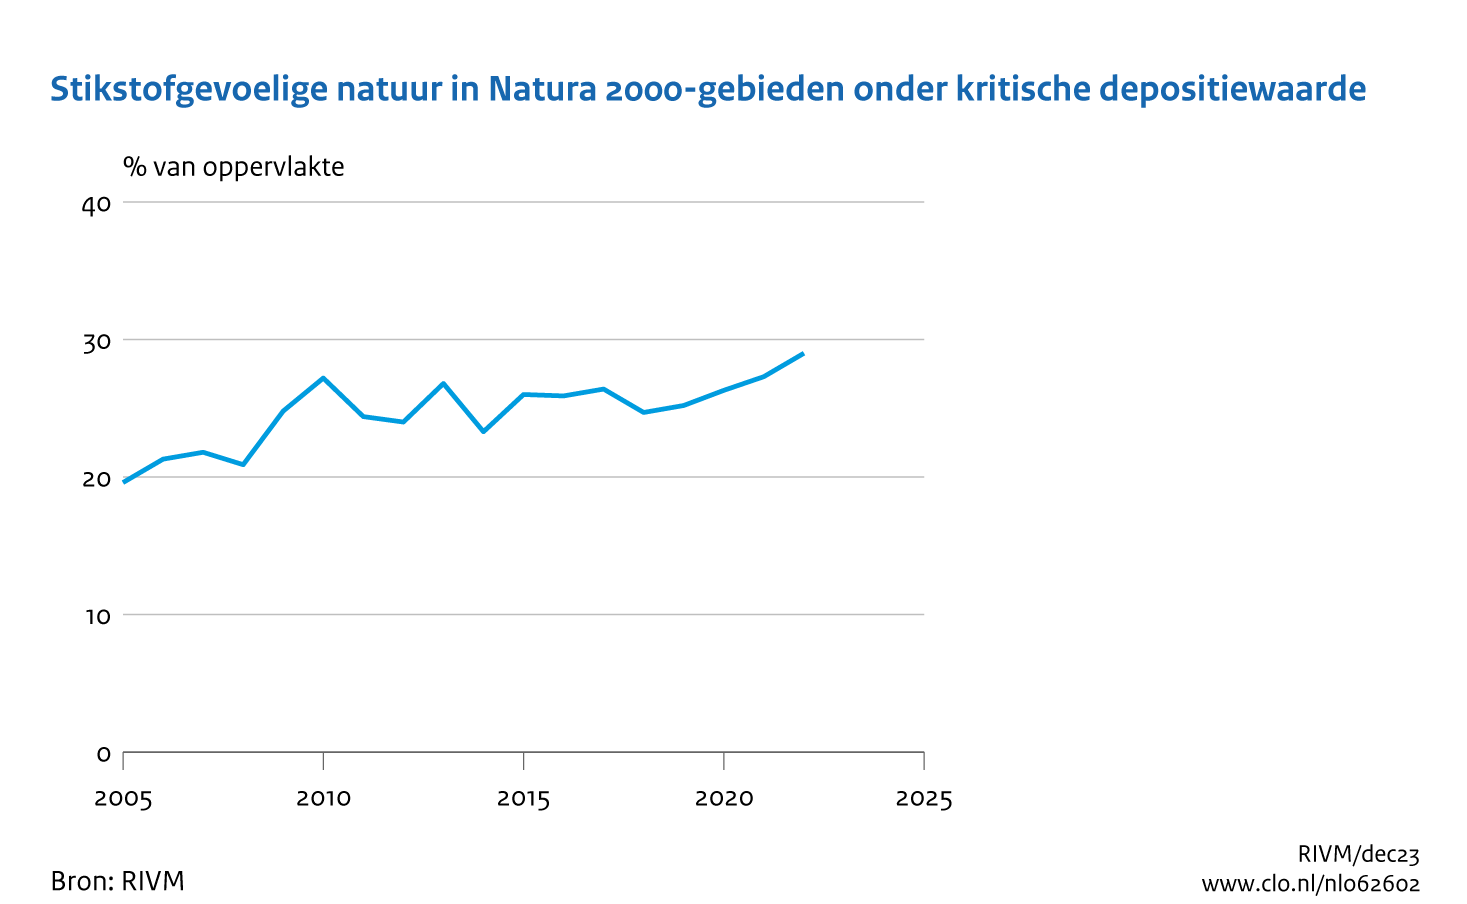 Figuur Trend in stikstofgevoelige natuur onder kritische depositiewaarde, 2005-2022. In de rest van de tekst wordt deze figuur uitgebreider uitgelegd.